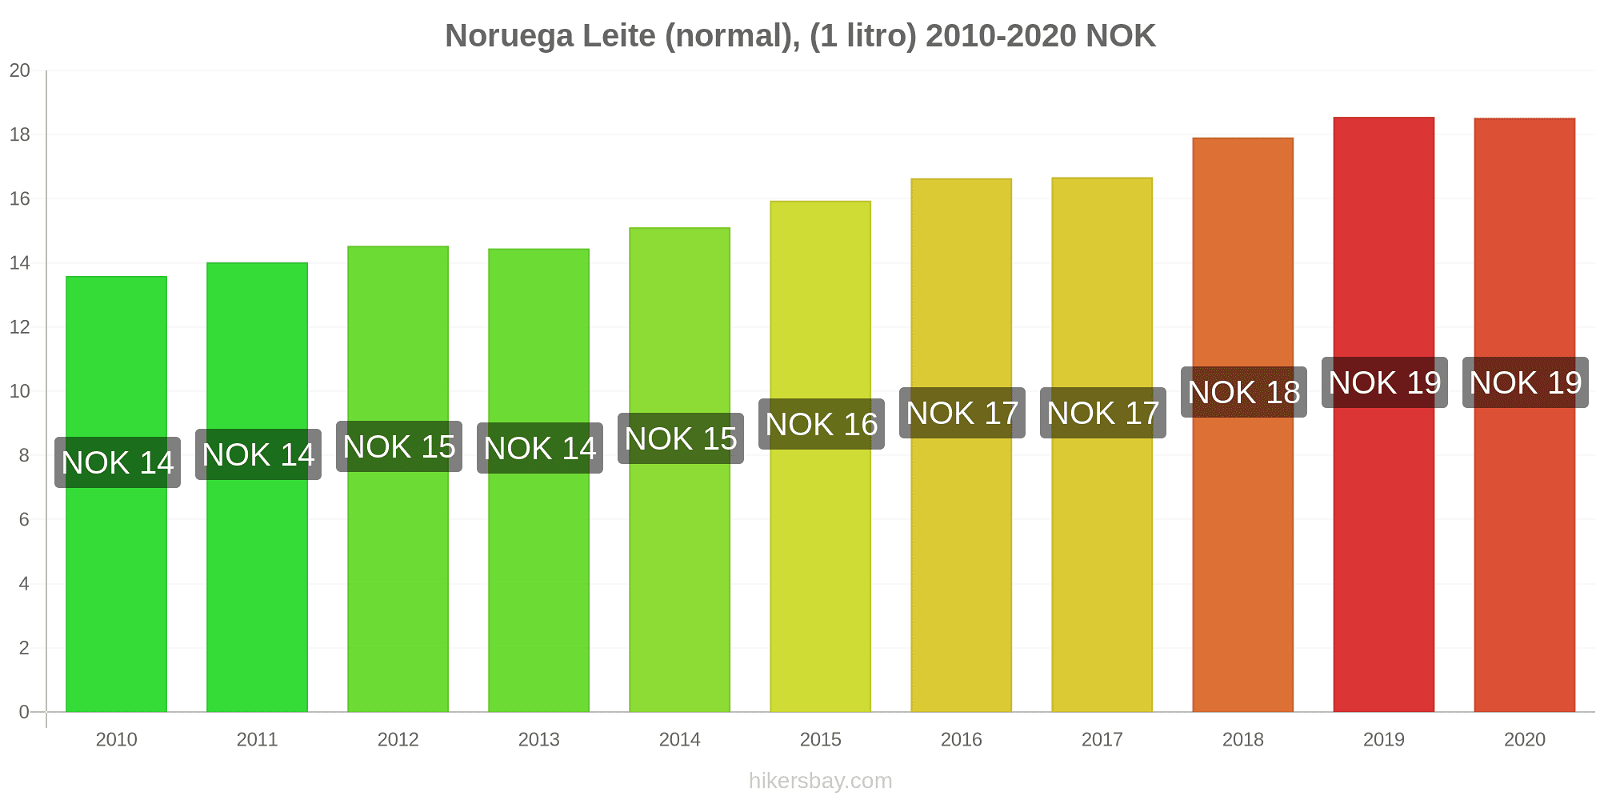 Noruega variação de preço (Regular), leite (1 litro) hikersbay.com